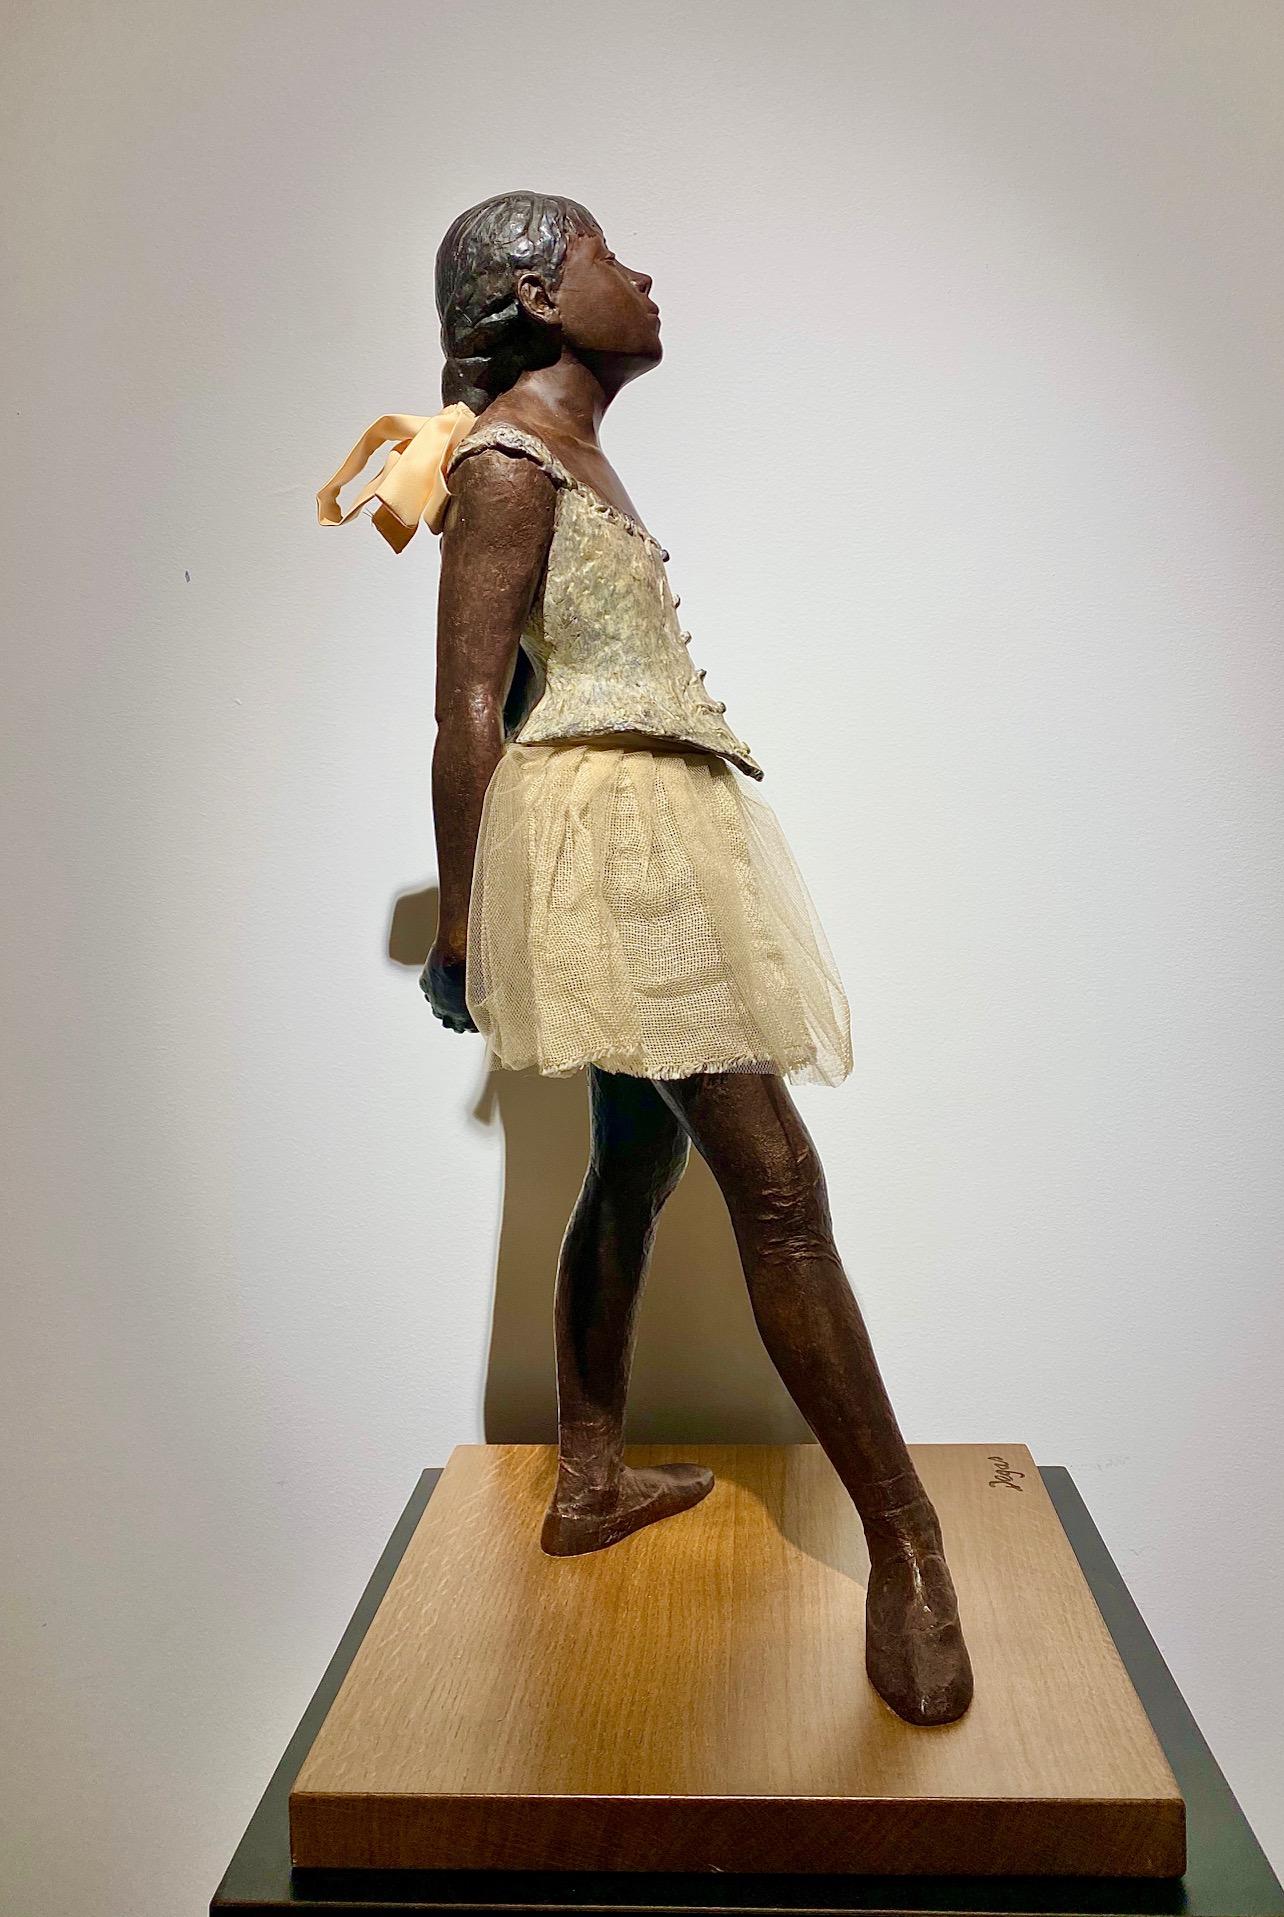 Edgar Degas (1834-1917)
La Petite Danseuse de 14 ans after Degas 
1998
69.5cm (27.36